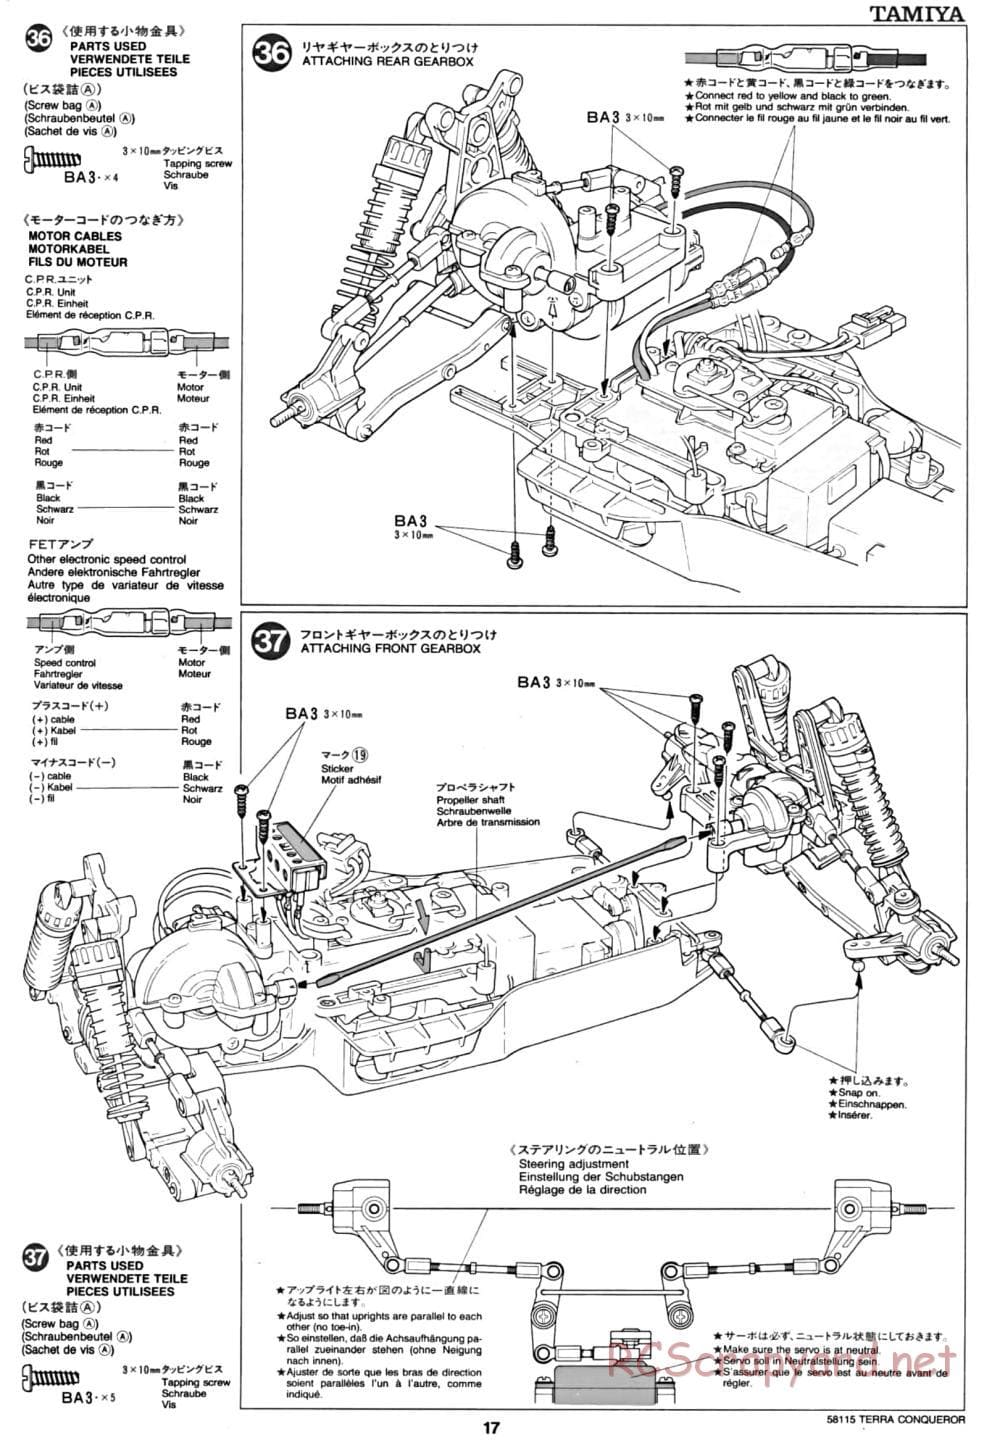 Tamiya - Terra Conqueror Chassis - Manual - Page 17